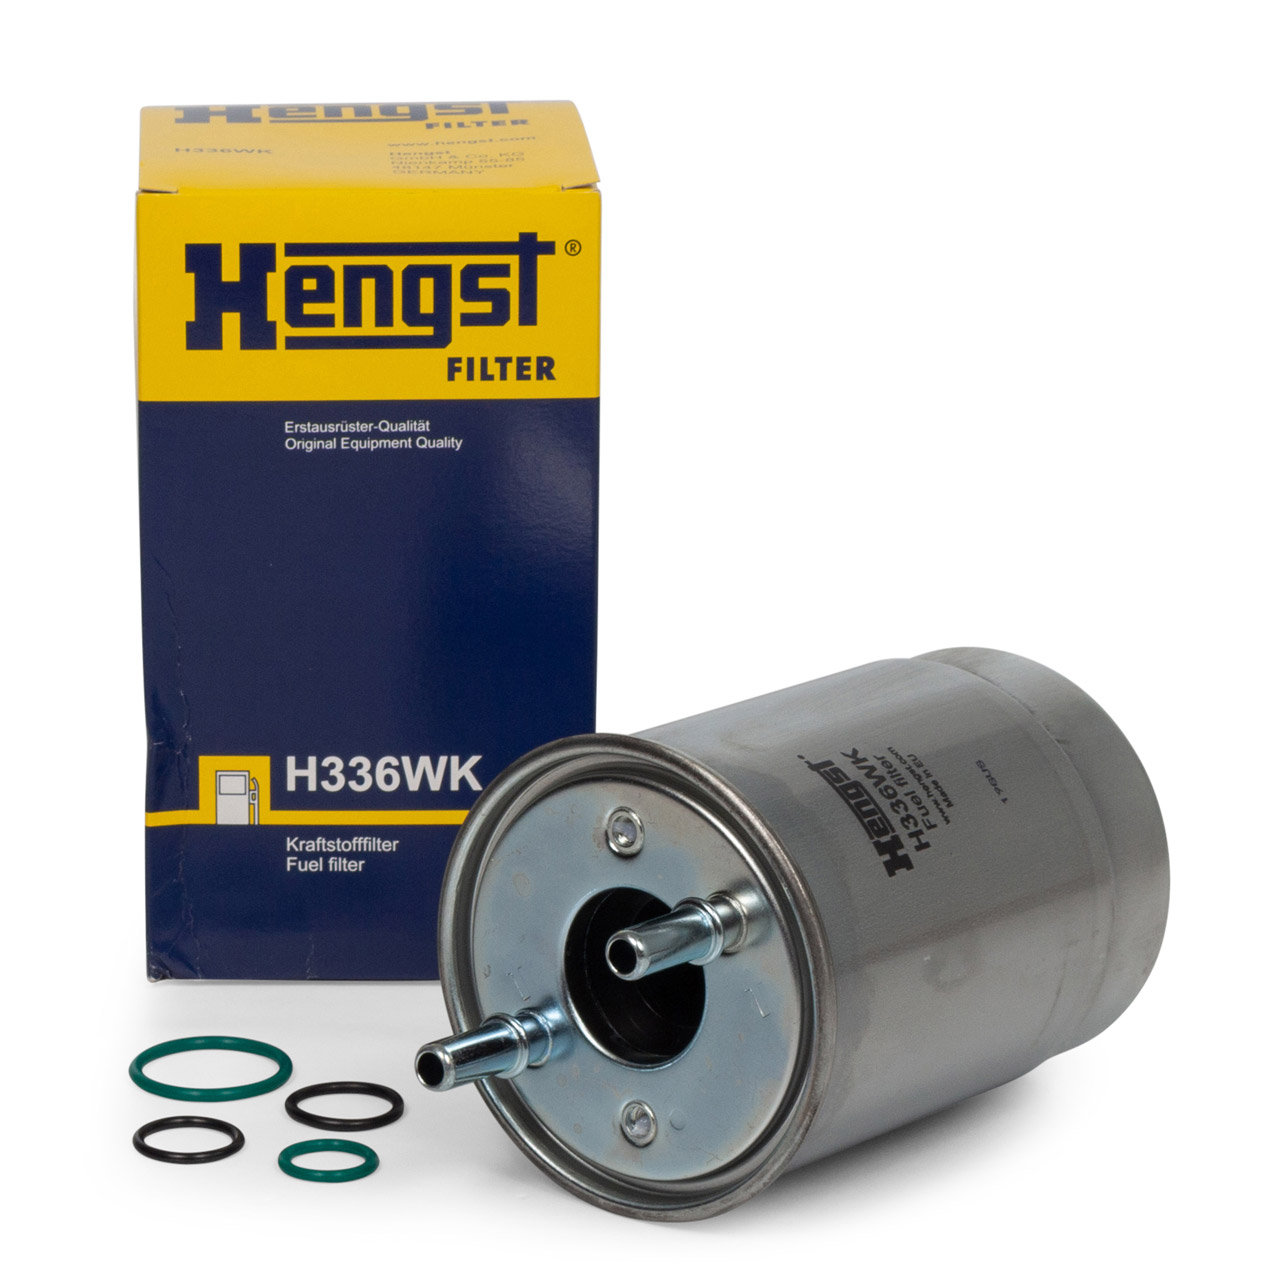 HENGST H336WK Kraftstofffilter für RENAULT FLUENCE MEGANE 3 SCENIC 3 1.5-2.0 dCi